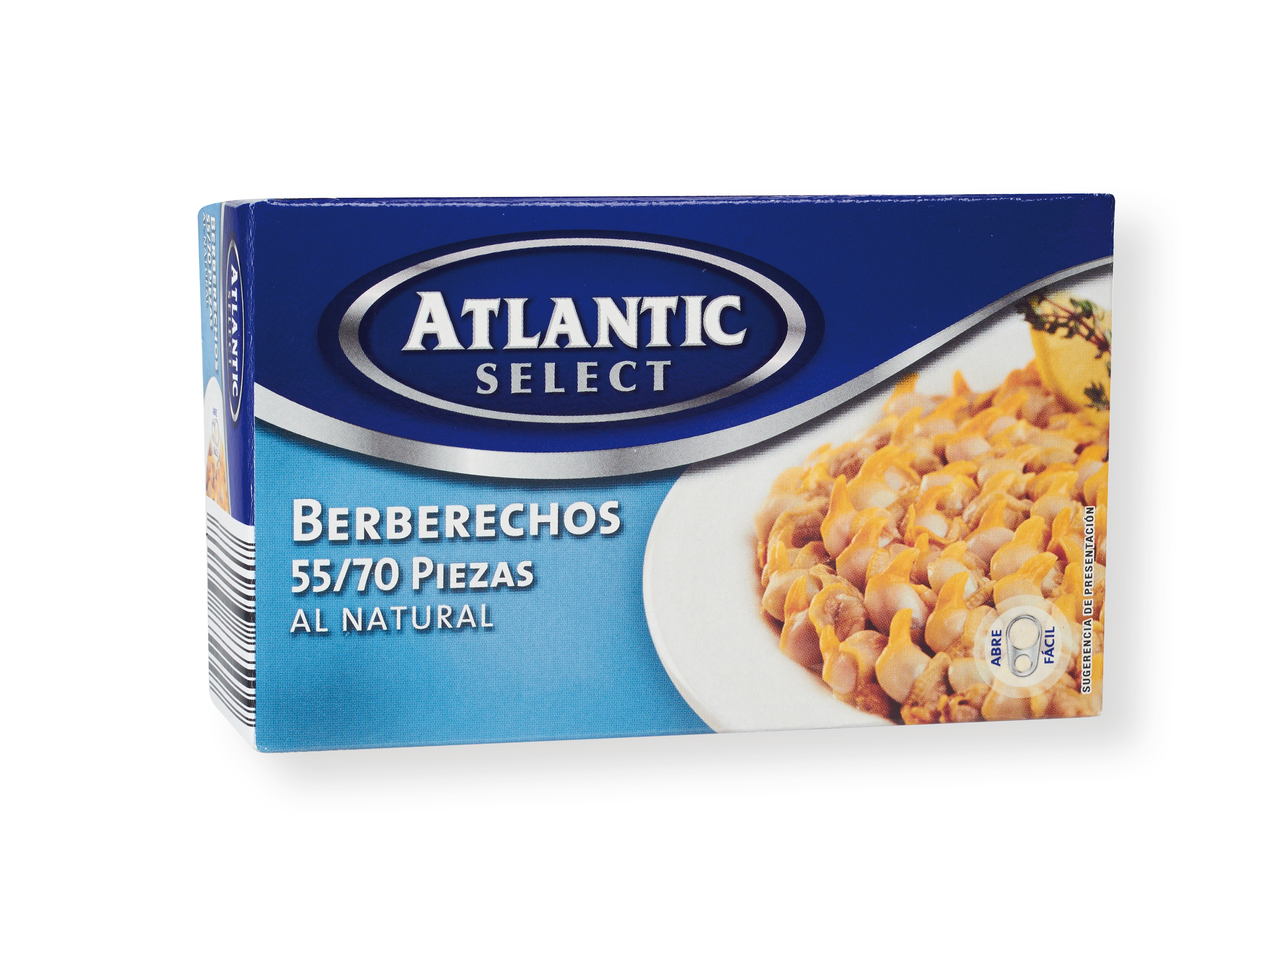 'Atlantic Select(R)' Berberechos al natural